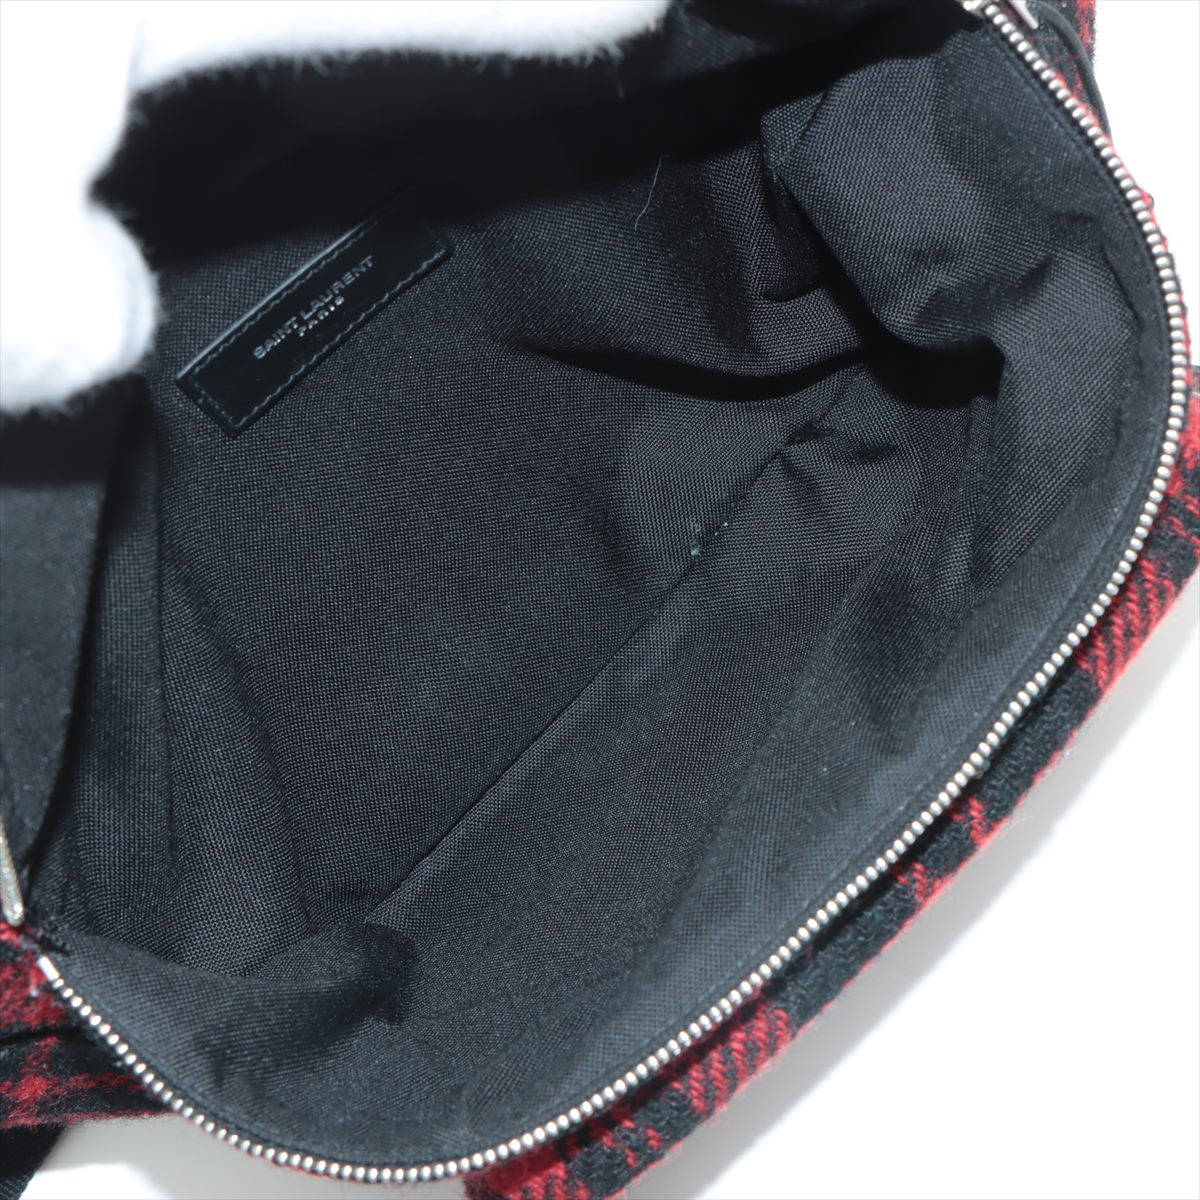 Saint Laurent Paris Nuxx Tweed Sling backpack Red x Black 581375